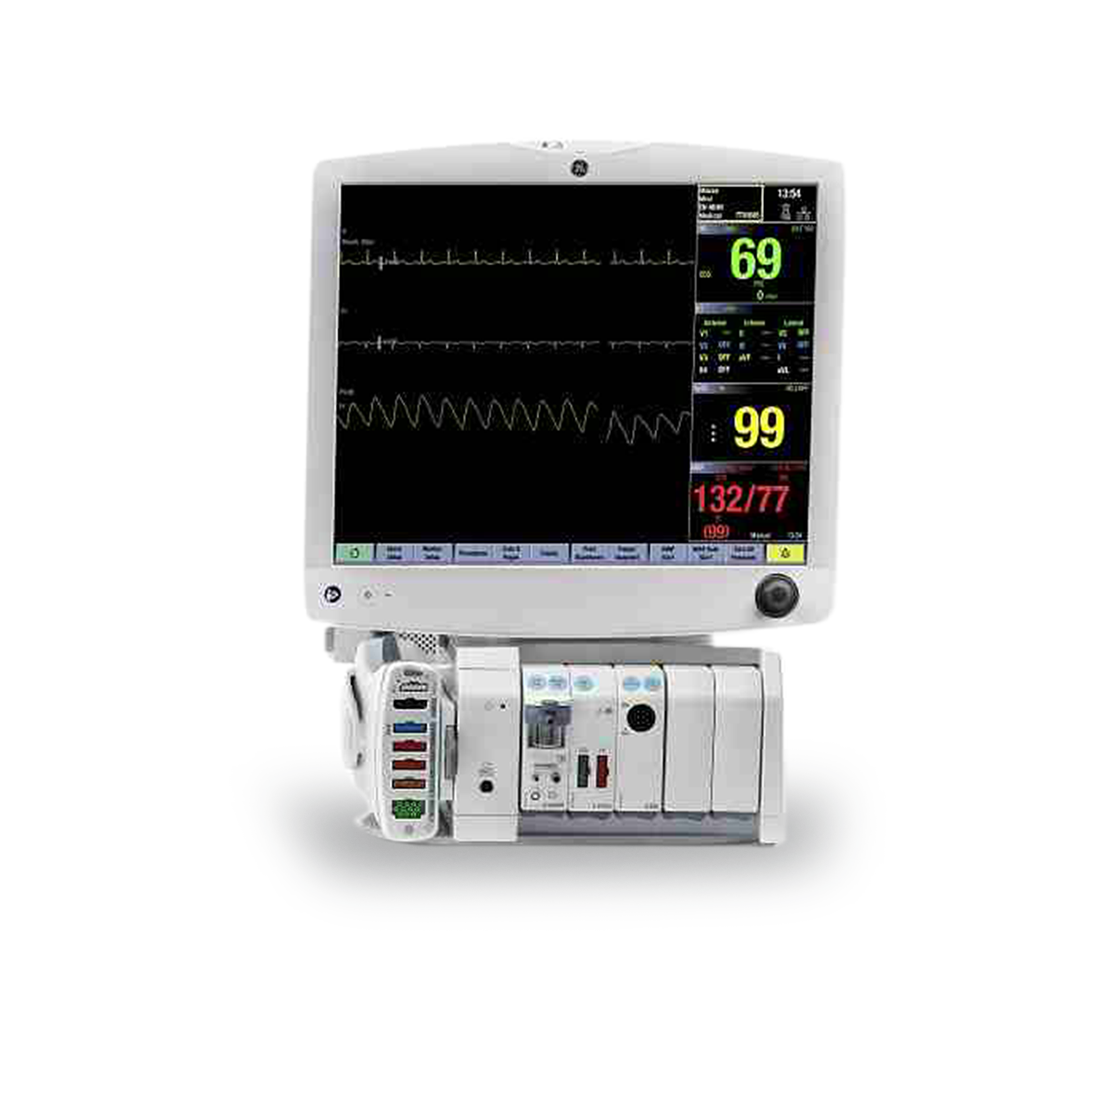 GE Carescape B850 Patient Monitor